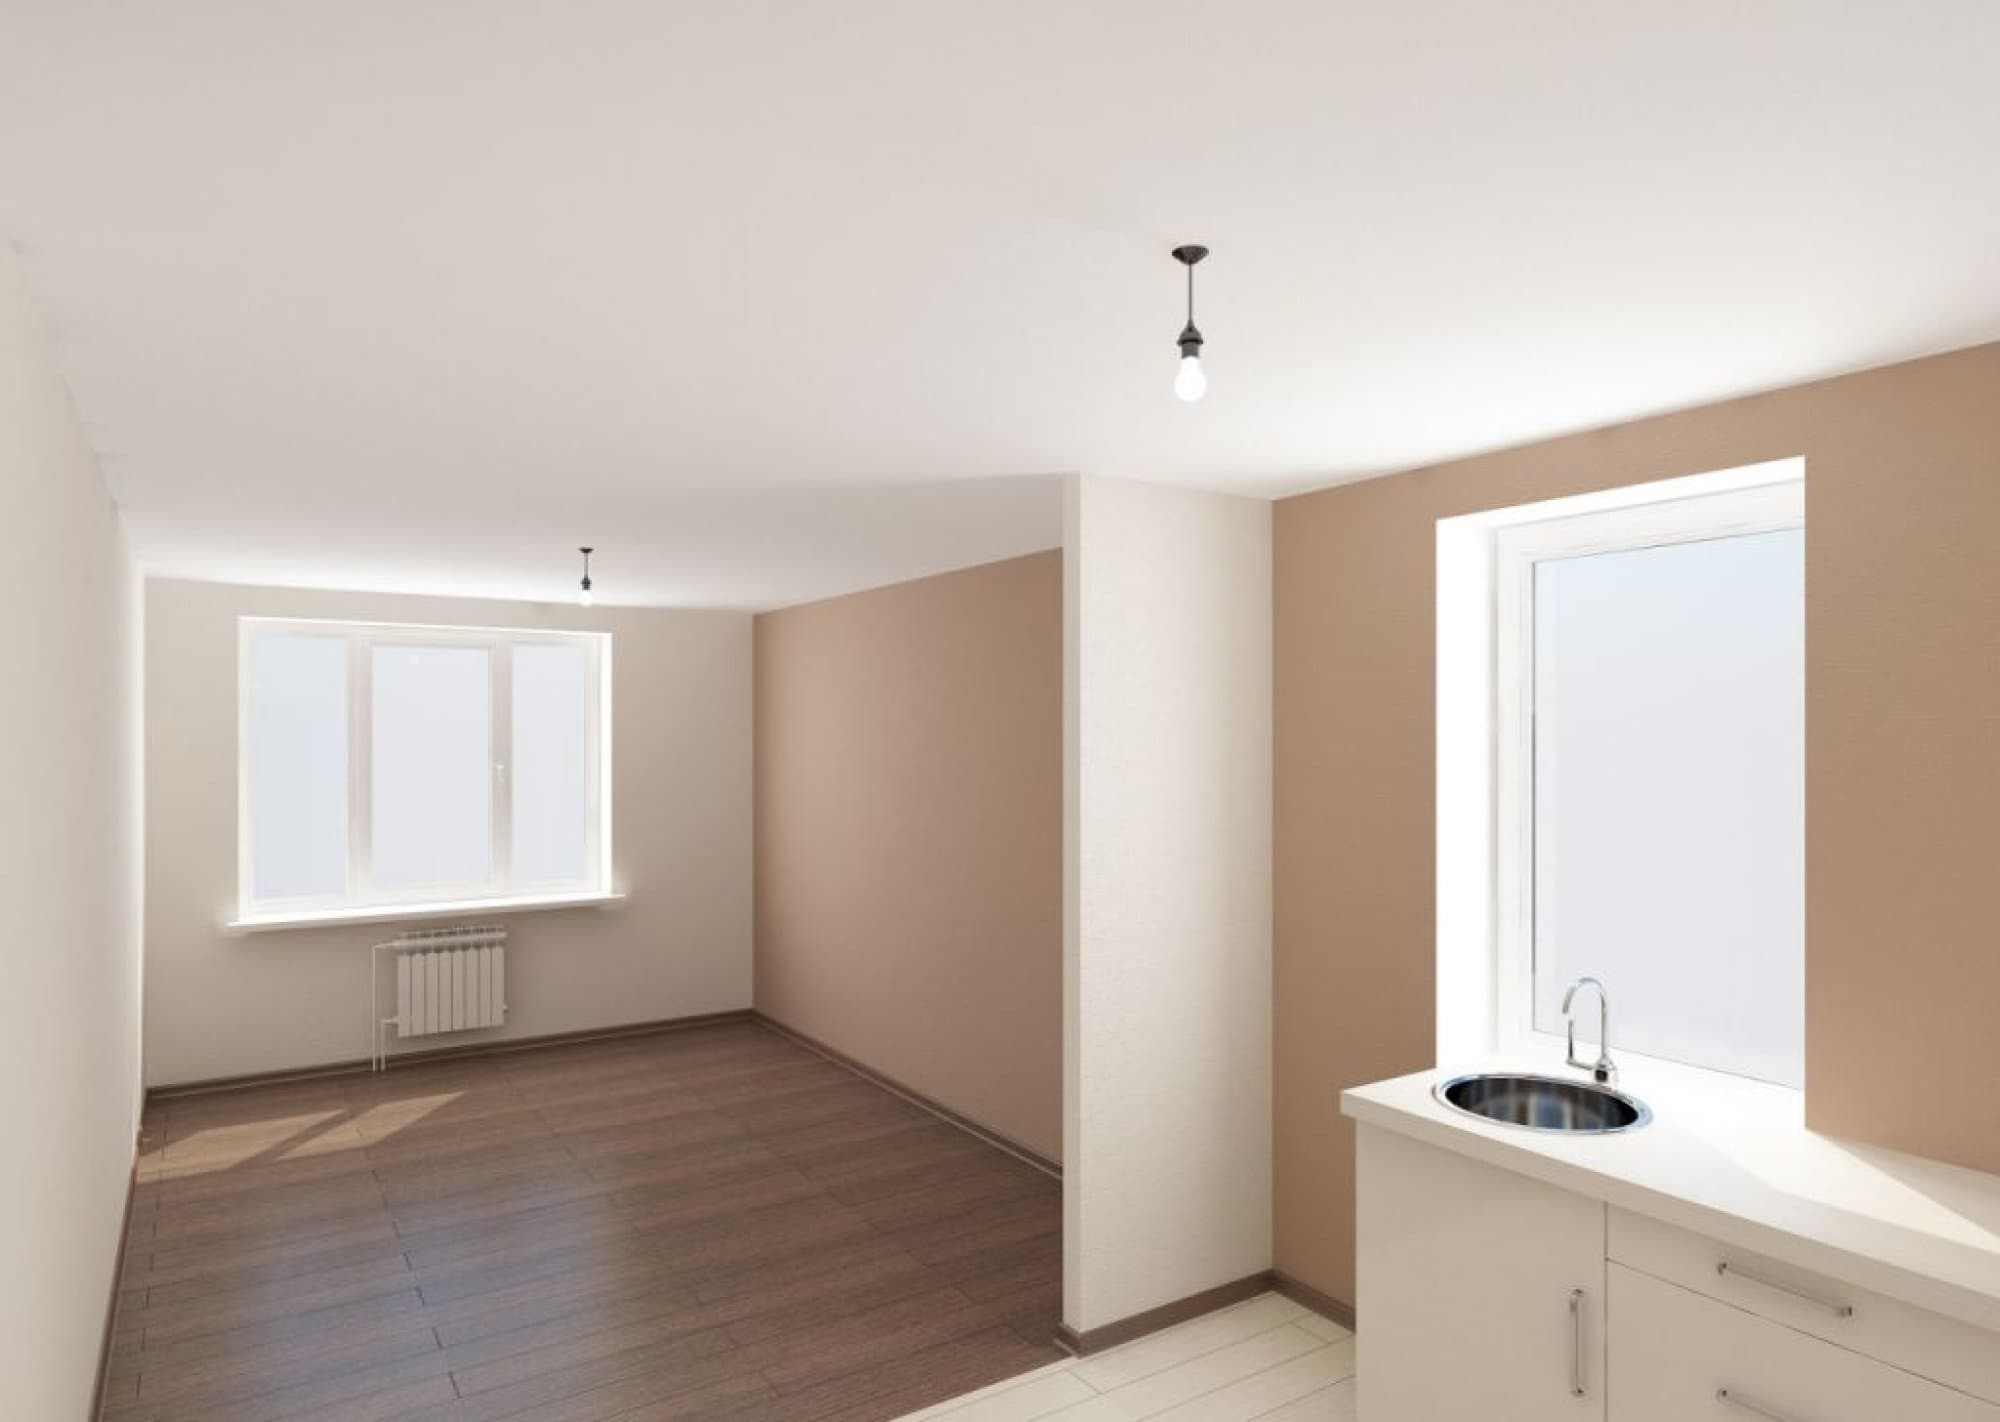 Фото с ремонтом квартир: Ремонт трёхкомнатной квартиры 133 кв. м в стиле ар-деко в ЖК Долина Сетунь